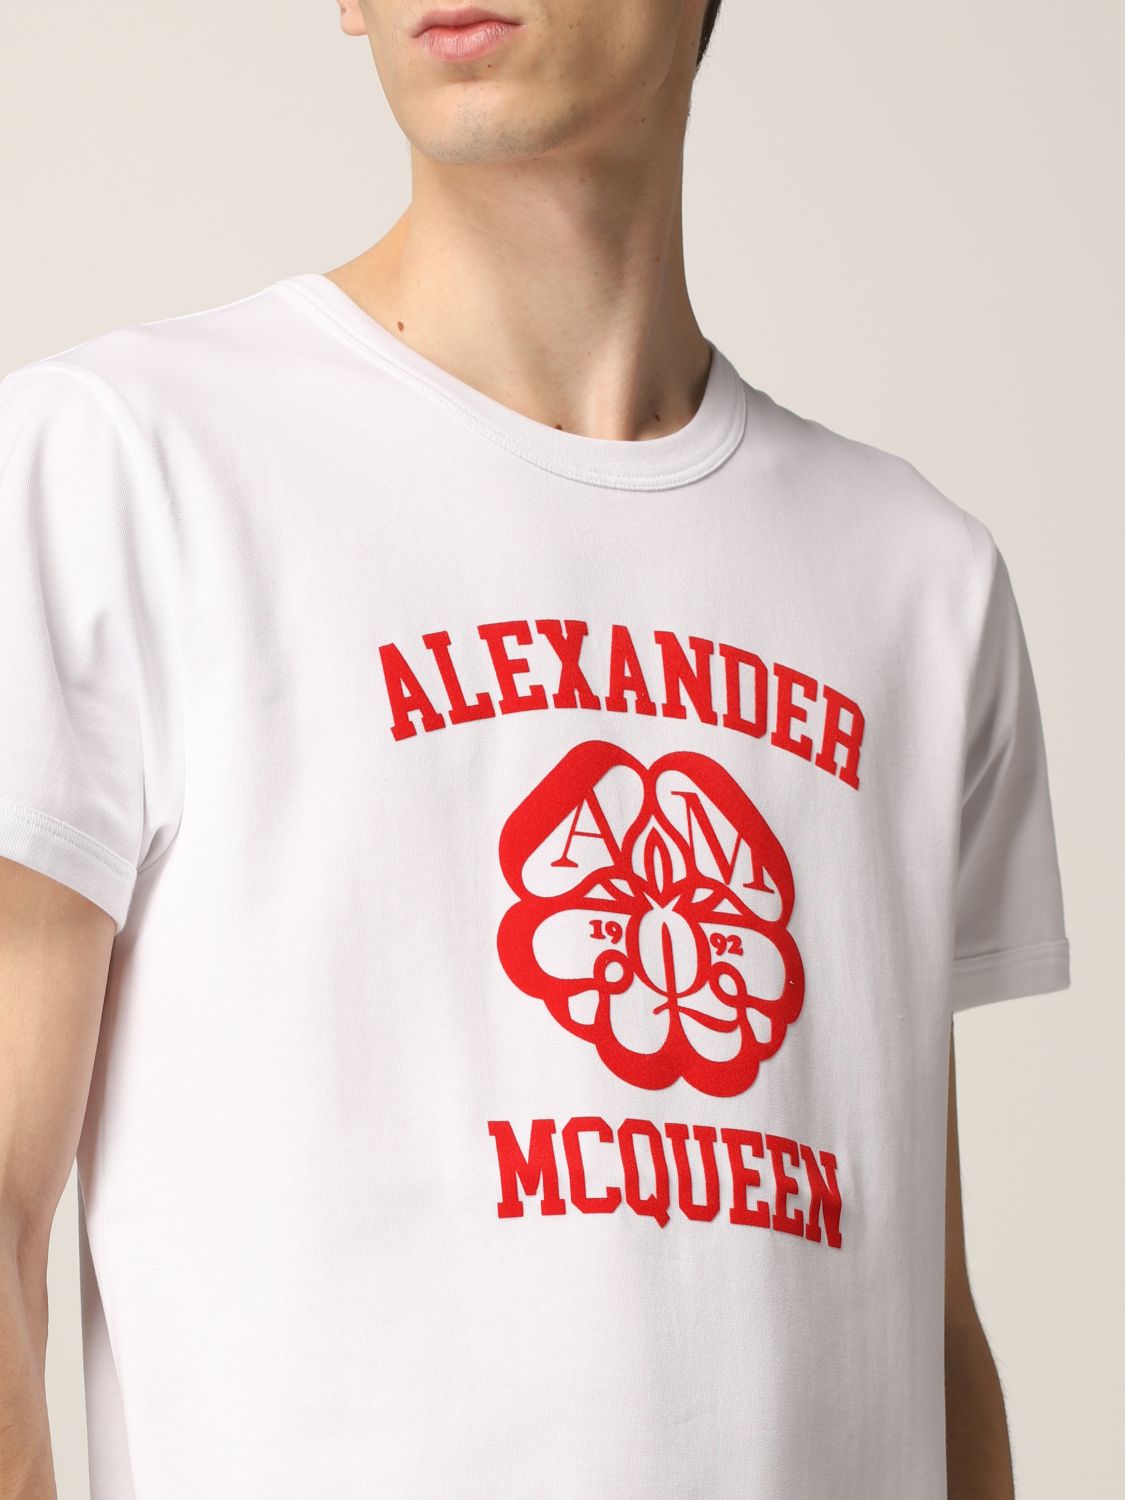 Alexander McQueen t-shirt with logo